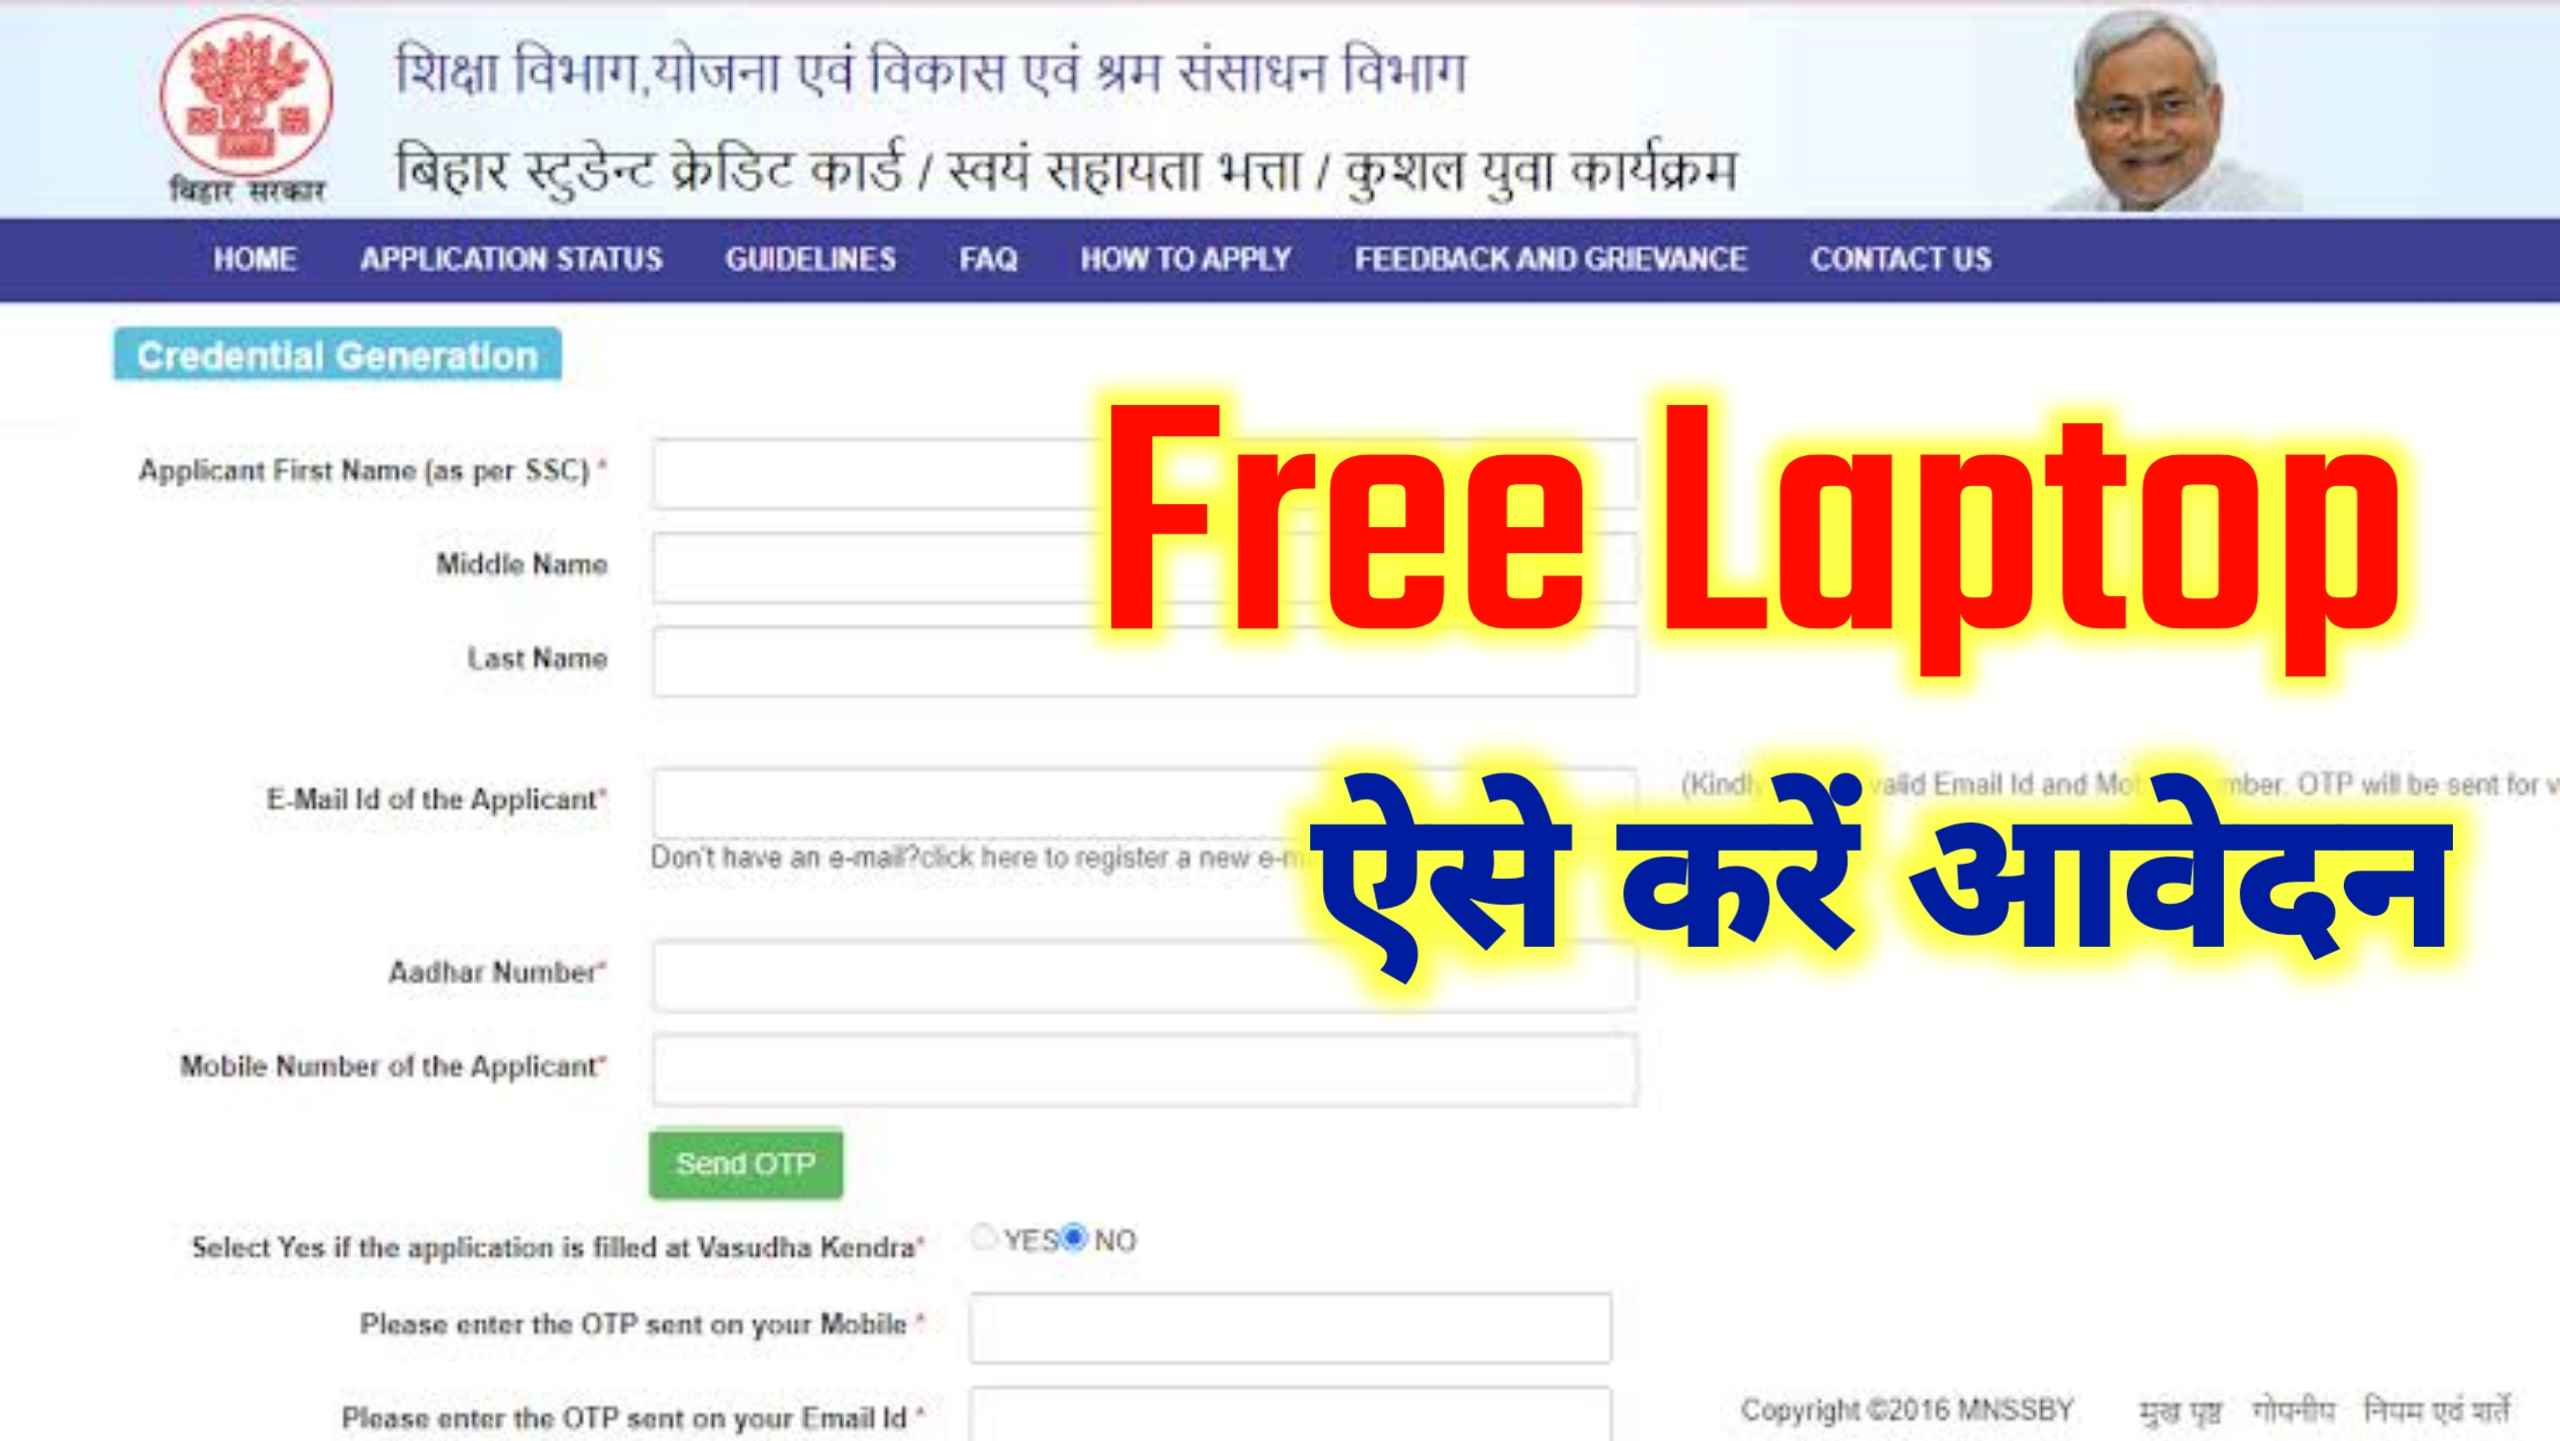 Bihar Free Laptop Yojana : सभी छात्रों को मिलेगा फ्री लैपटॉप ऐसे करें आवेदन